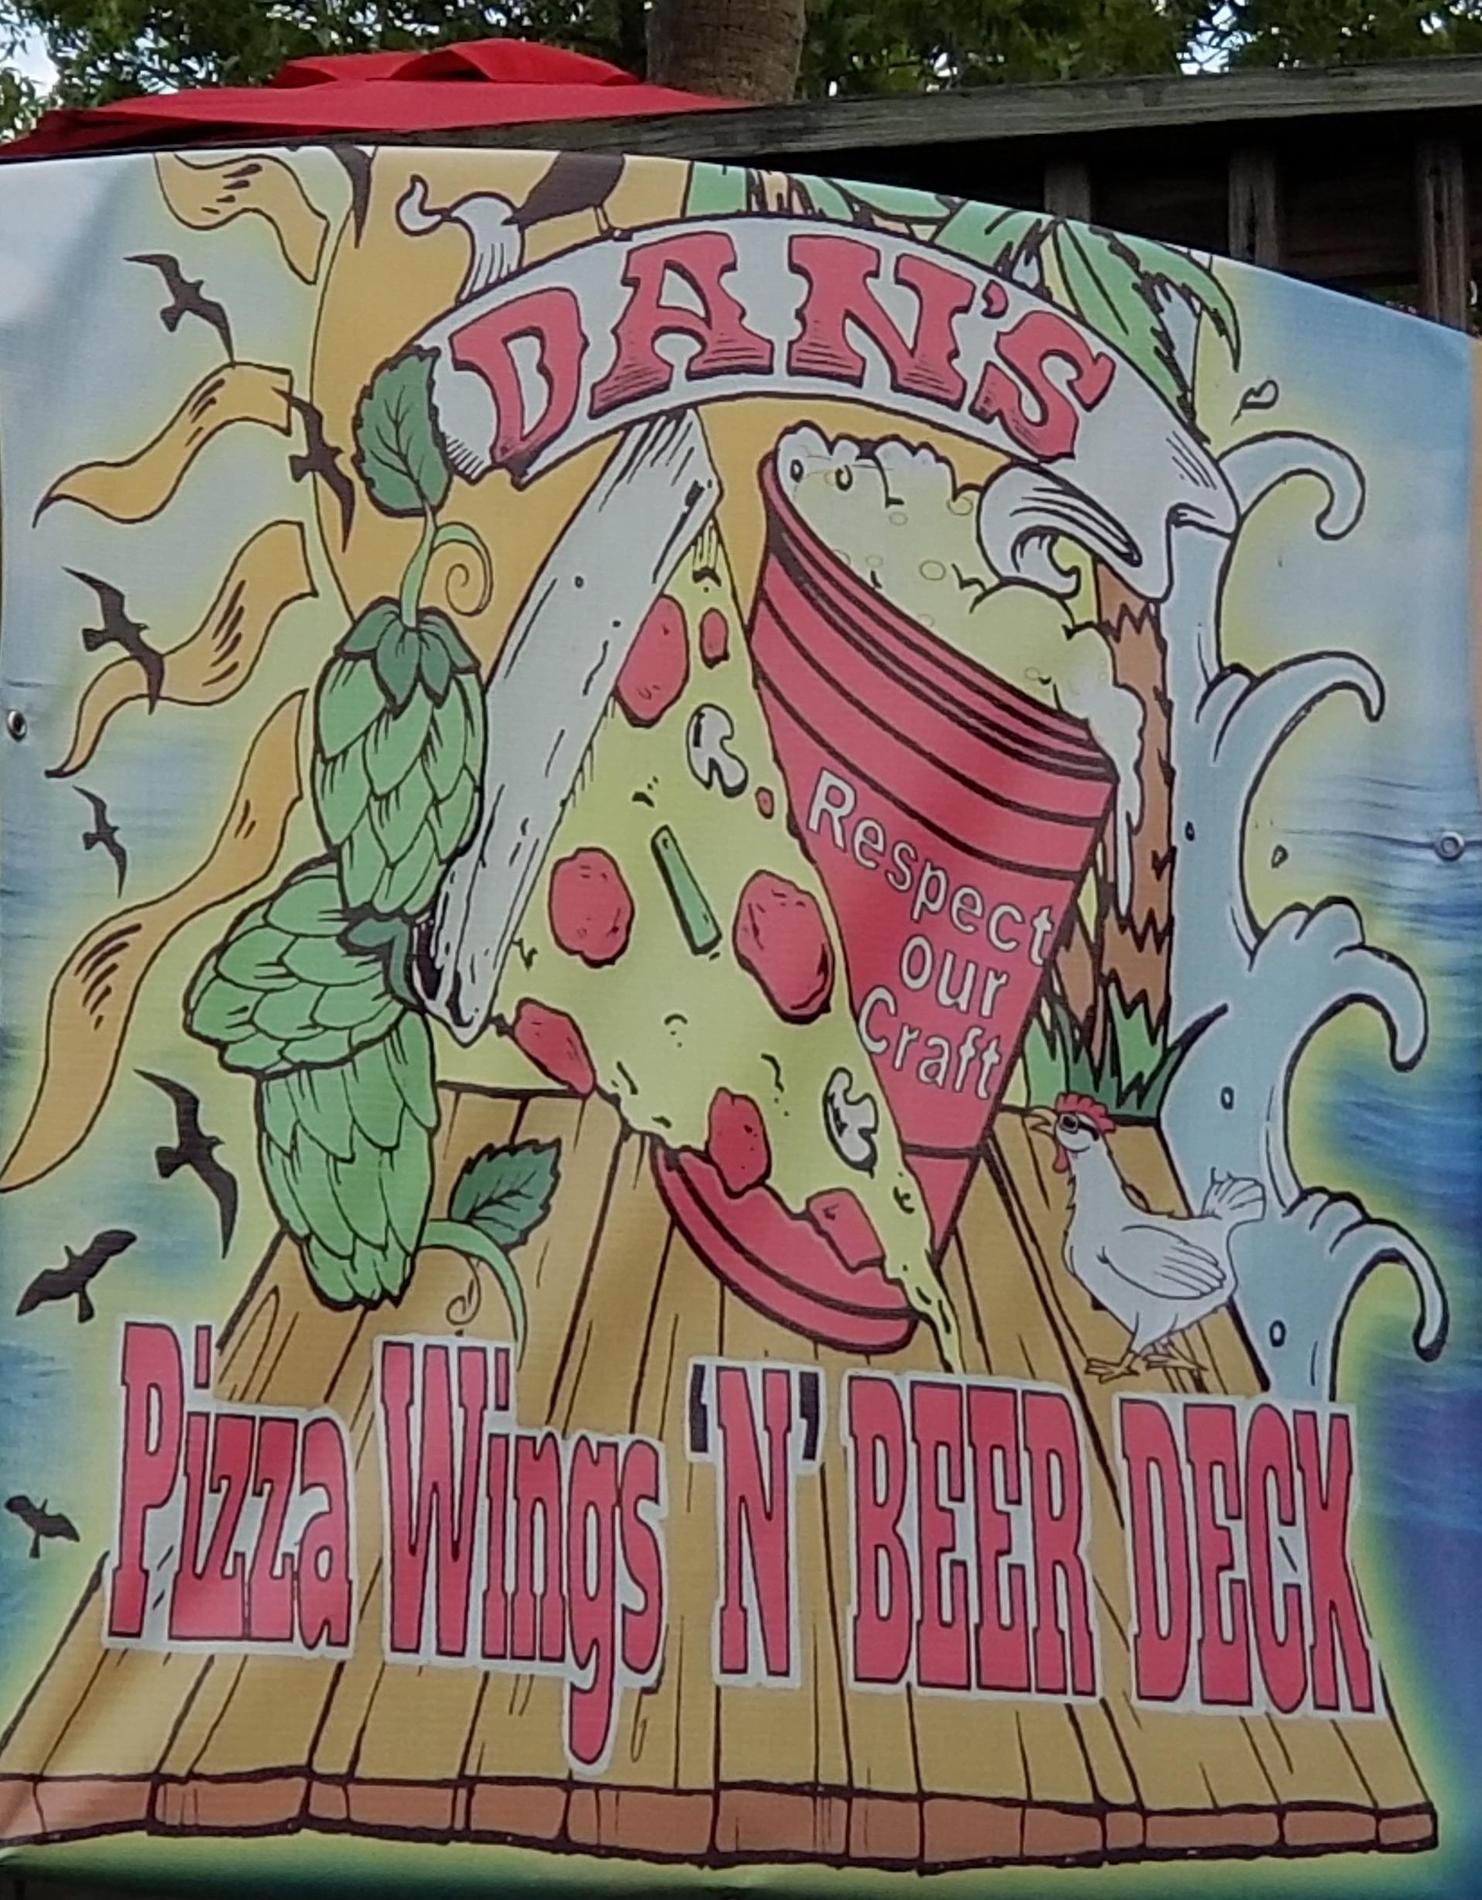 Images Dan's Pizza Wings 'N' Beer Deck